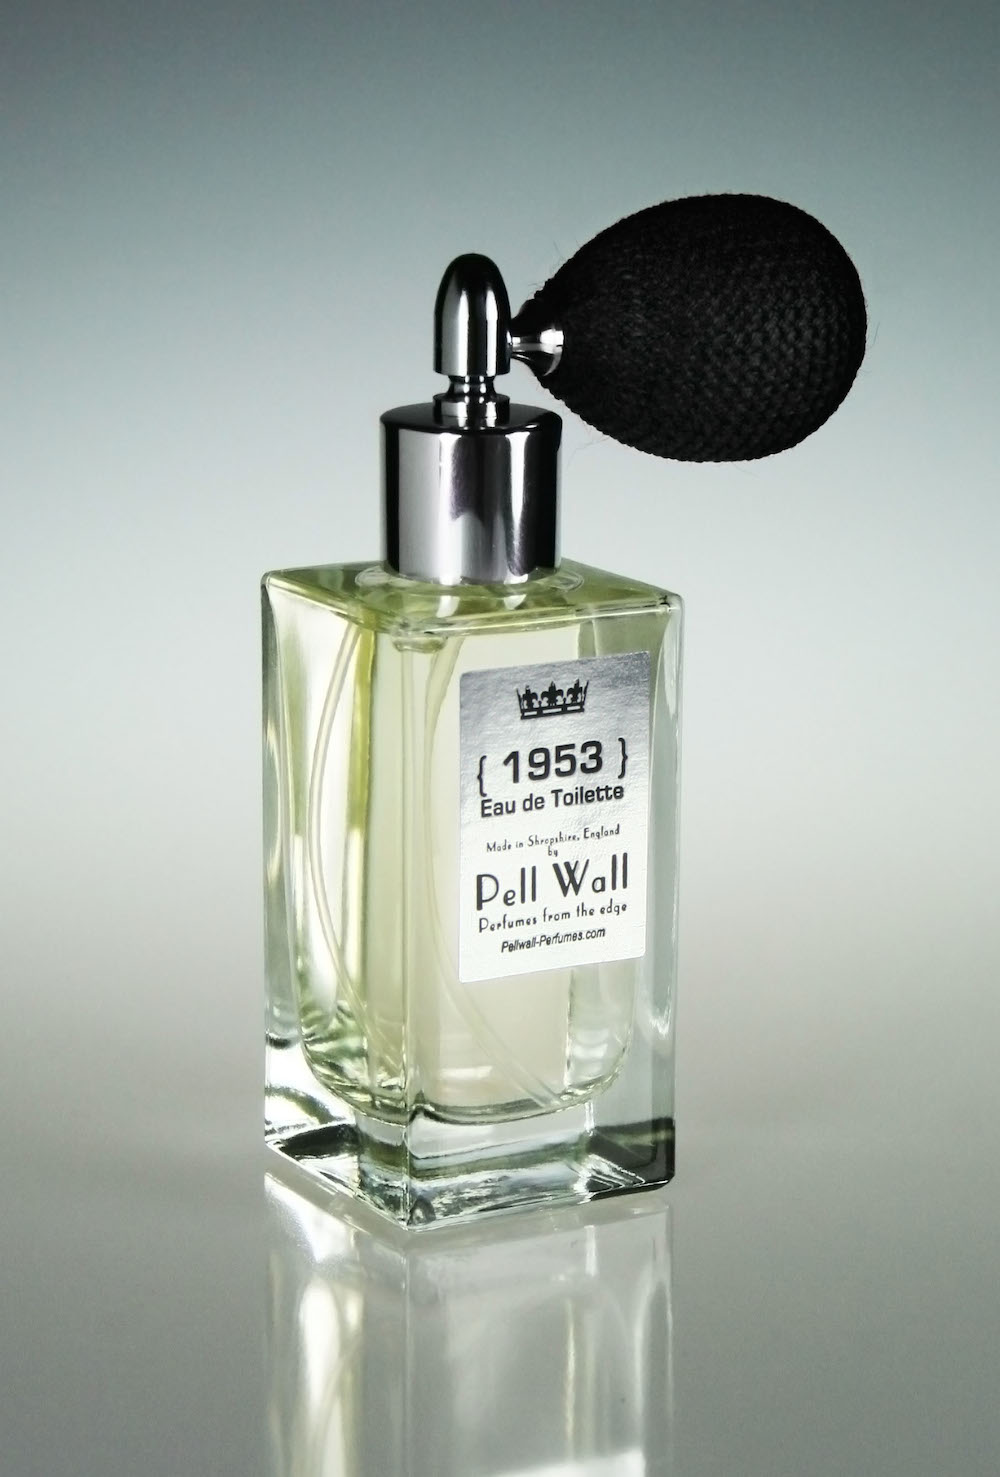 1953 Eau de Toilette Pell Wall Perfumes perfume - a ...